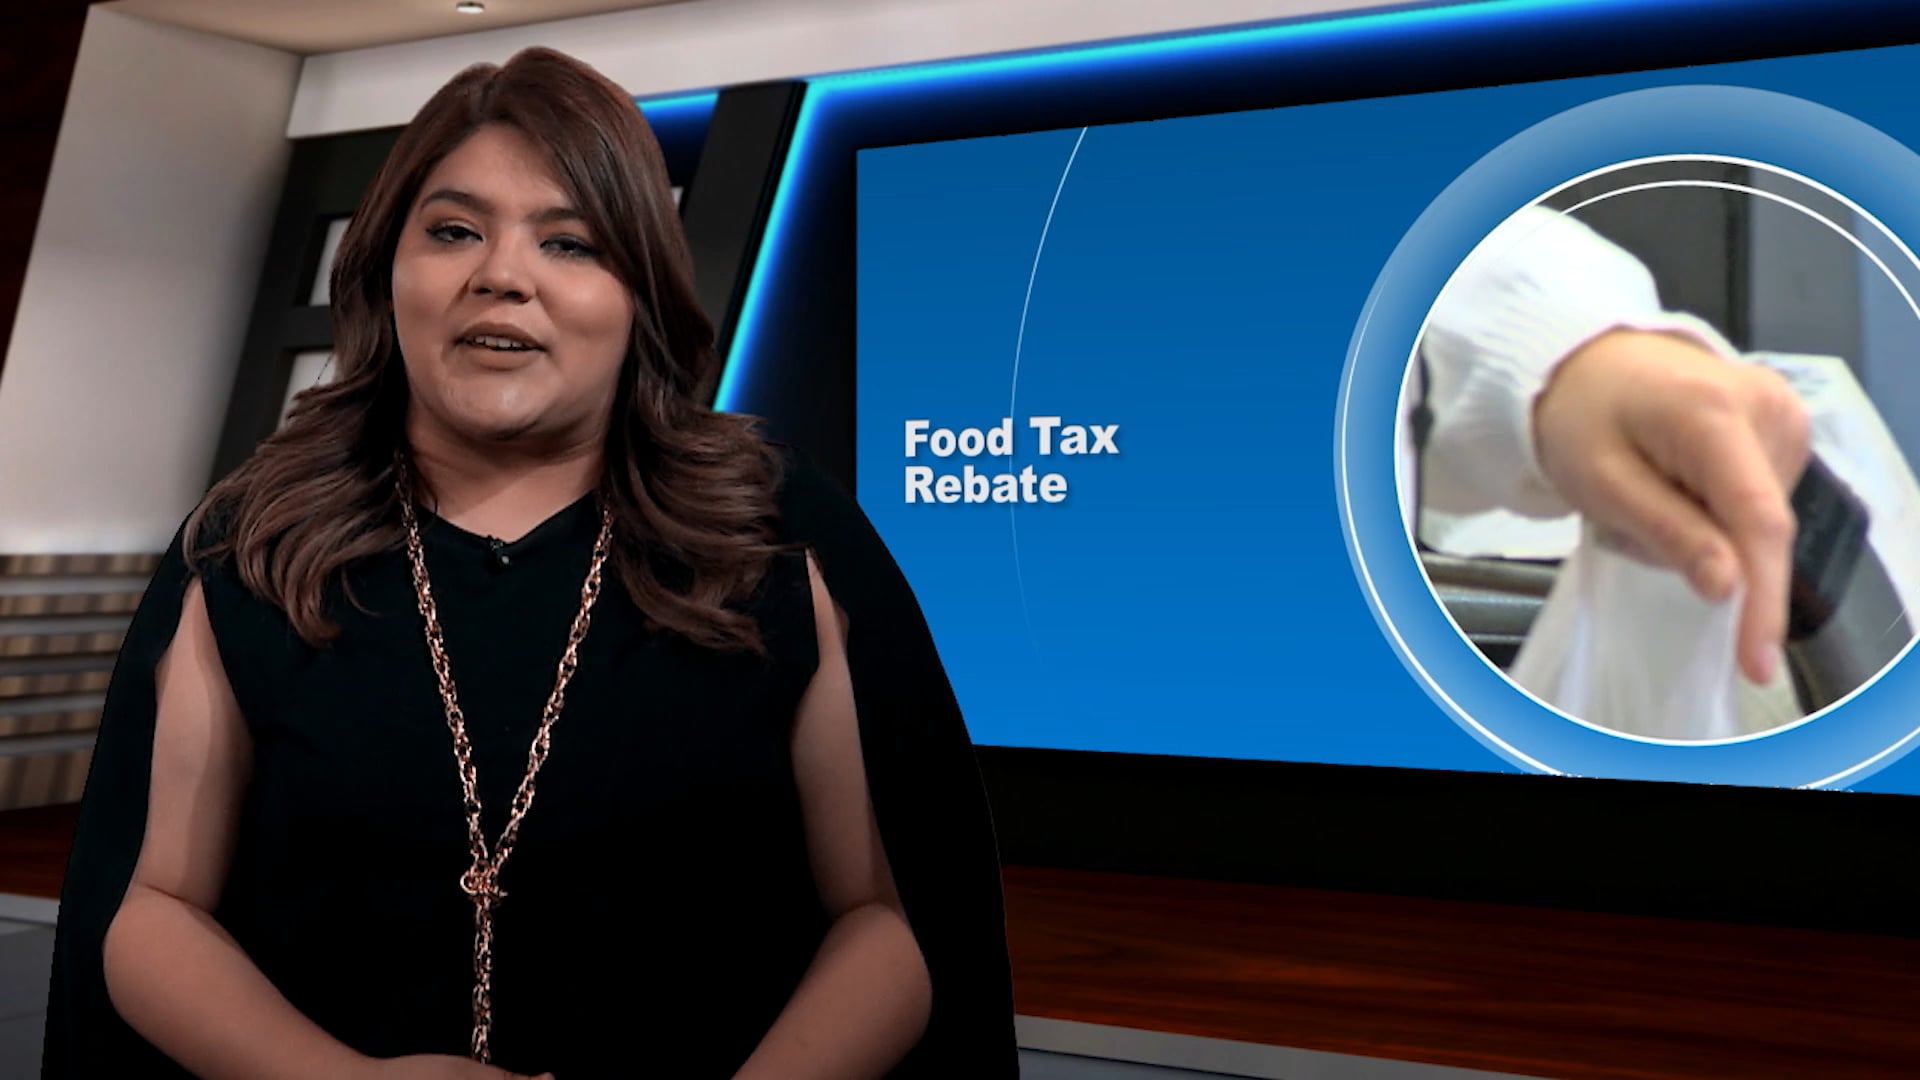 Food Tax Rebate 2019 On Vimeo